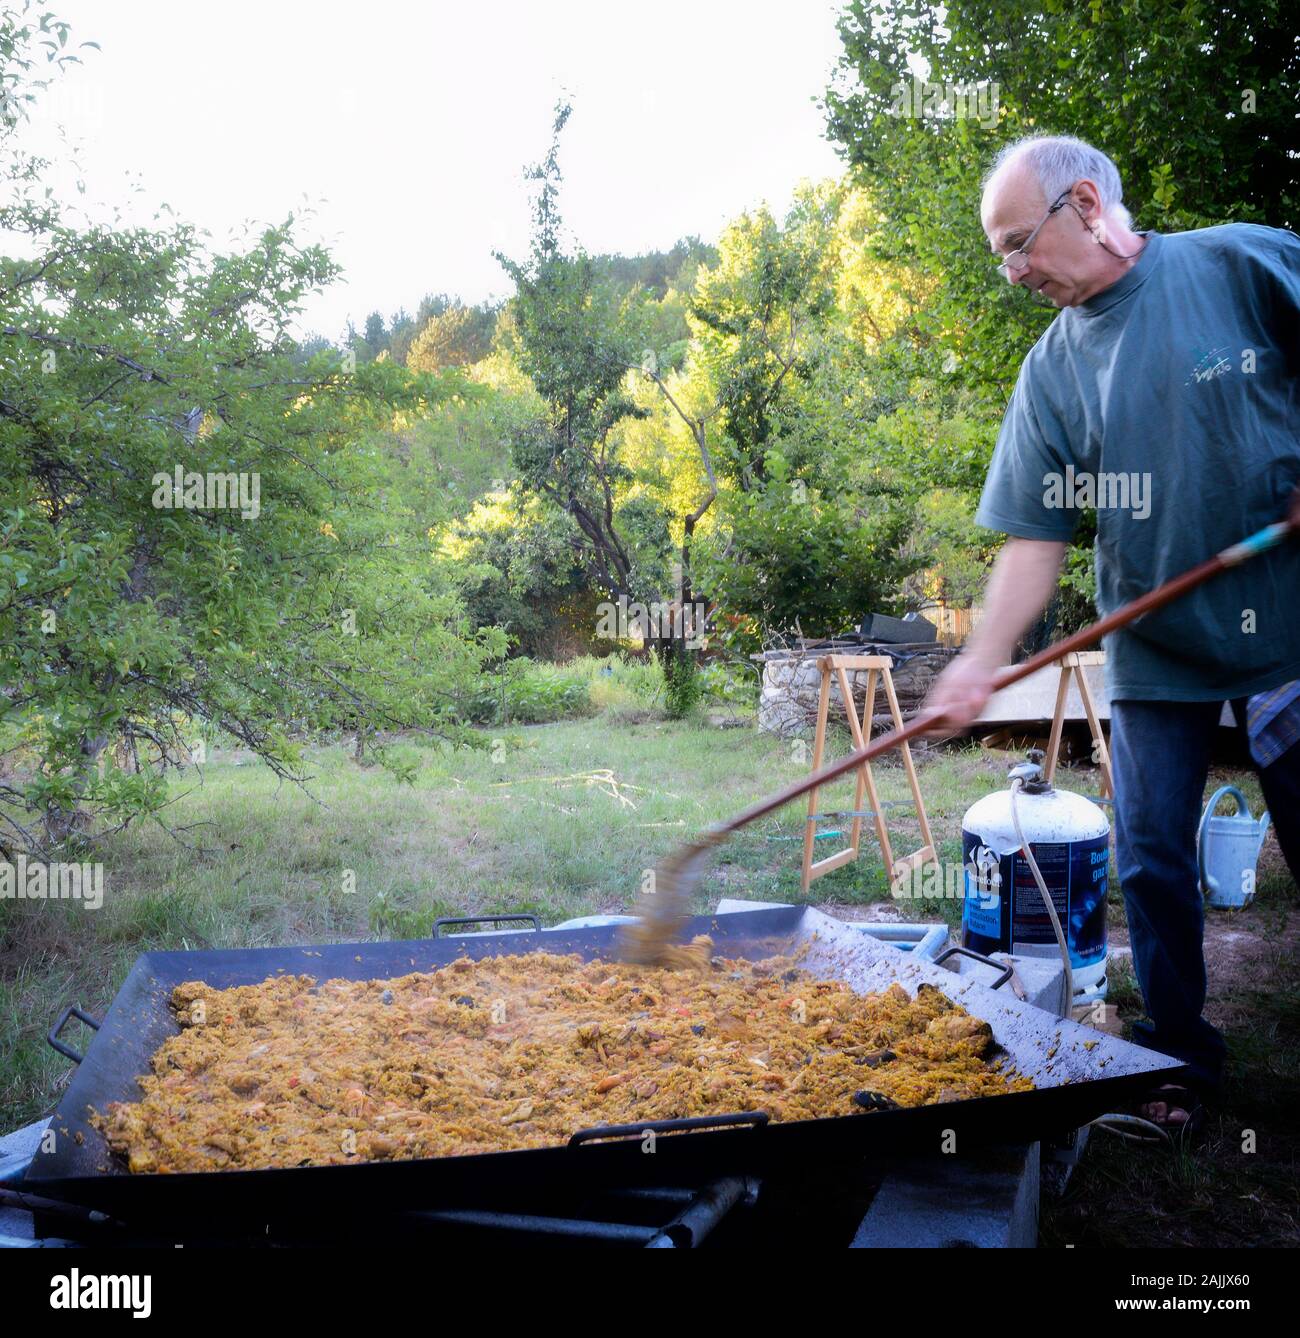 Man Paella Kochen im Freien für 100 Personen Stockfotografie - Alamy